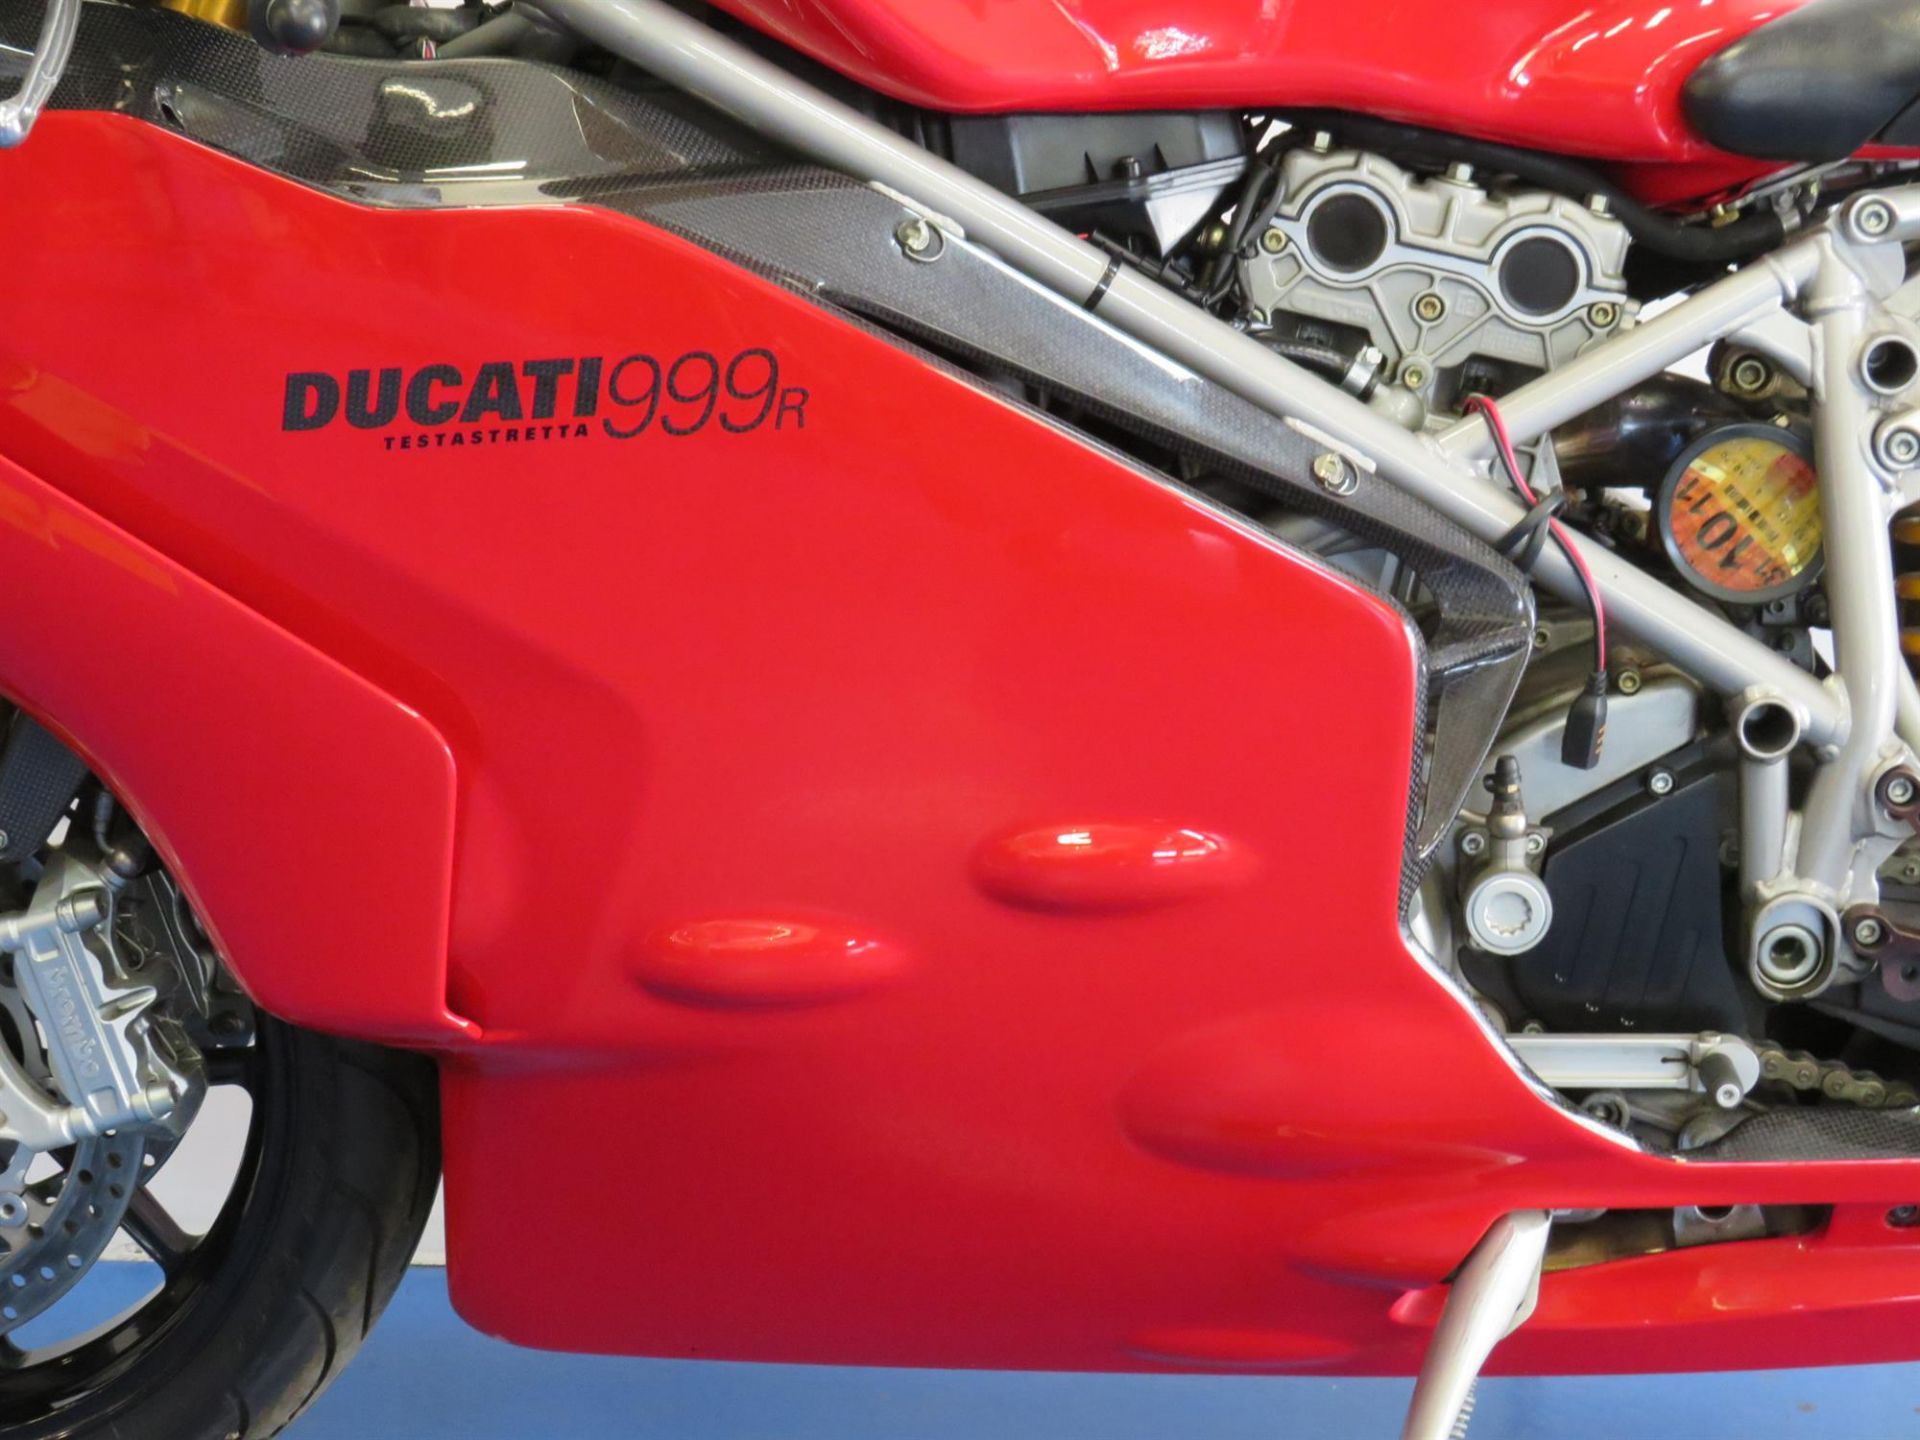 2003 Ducati 999R 999cc - Image 4 of 10